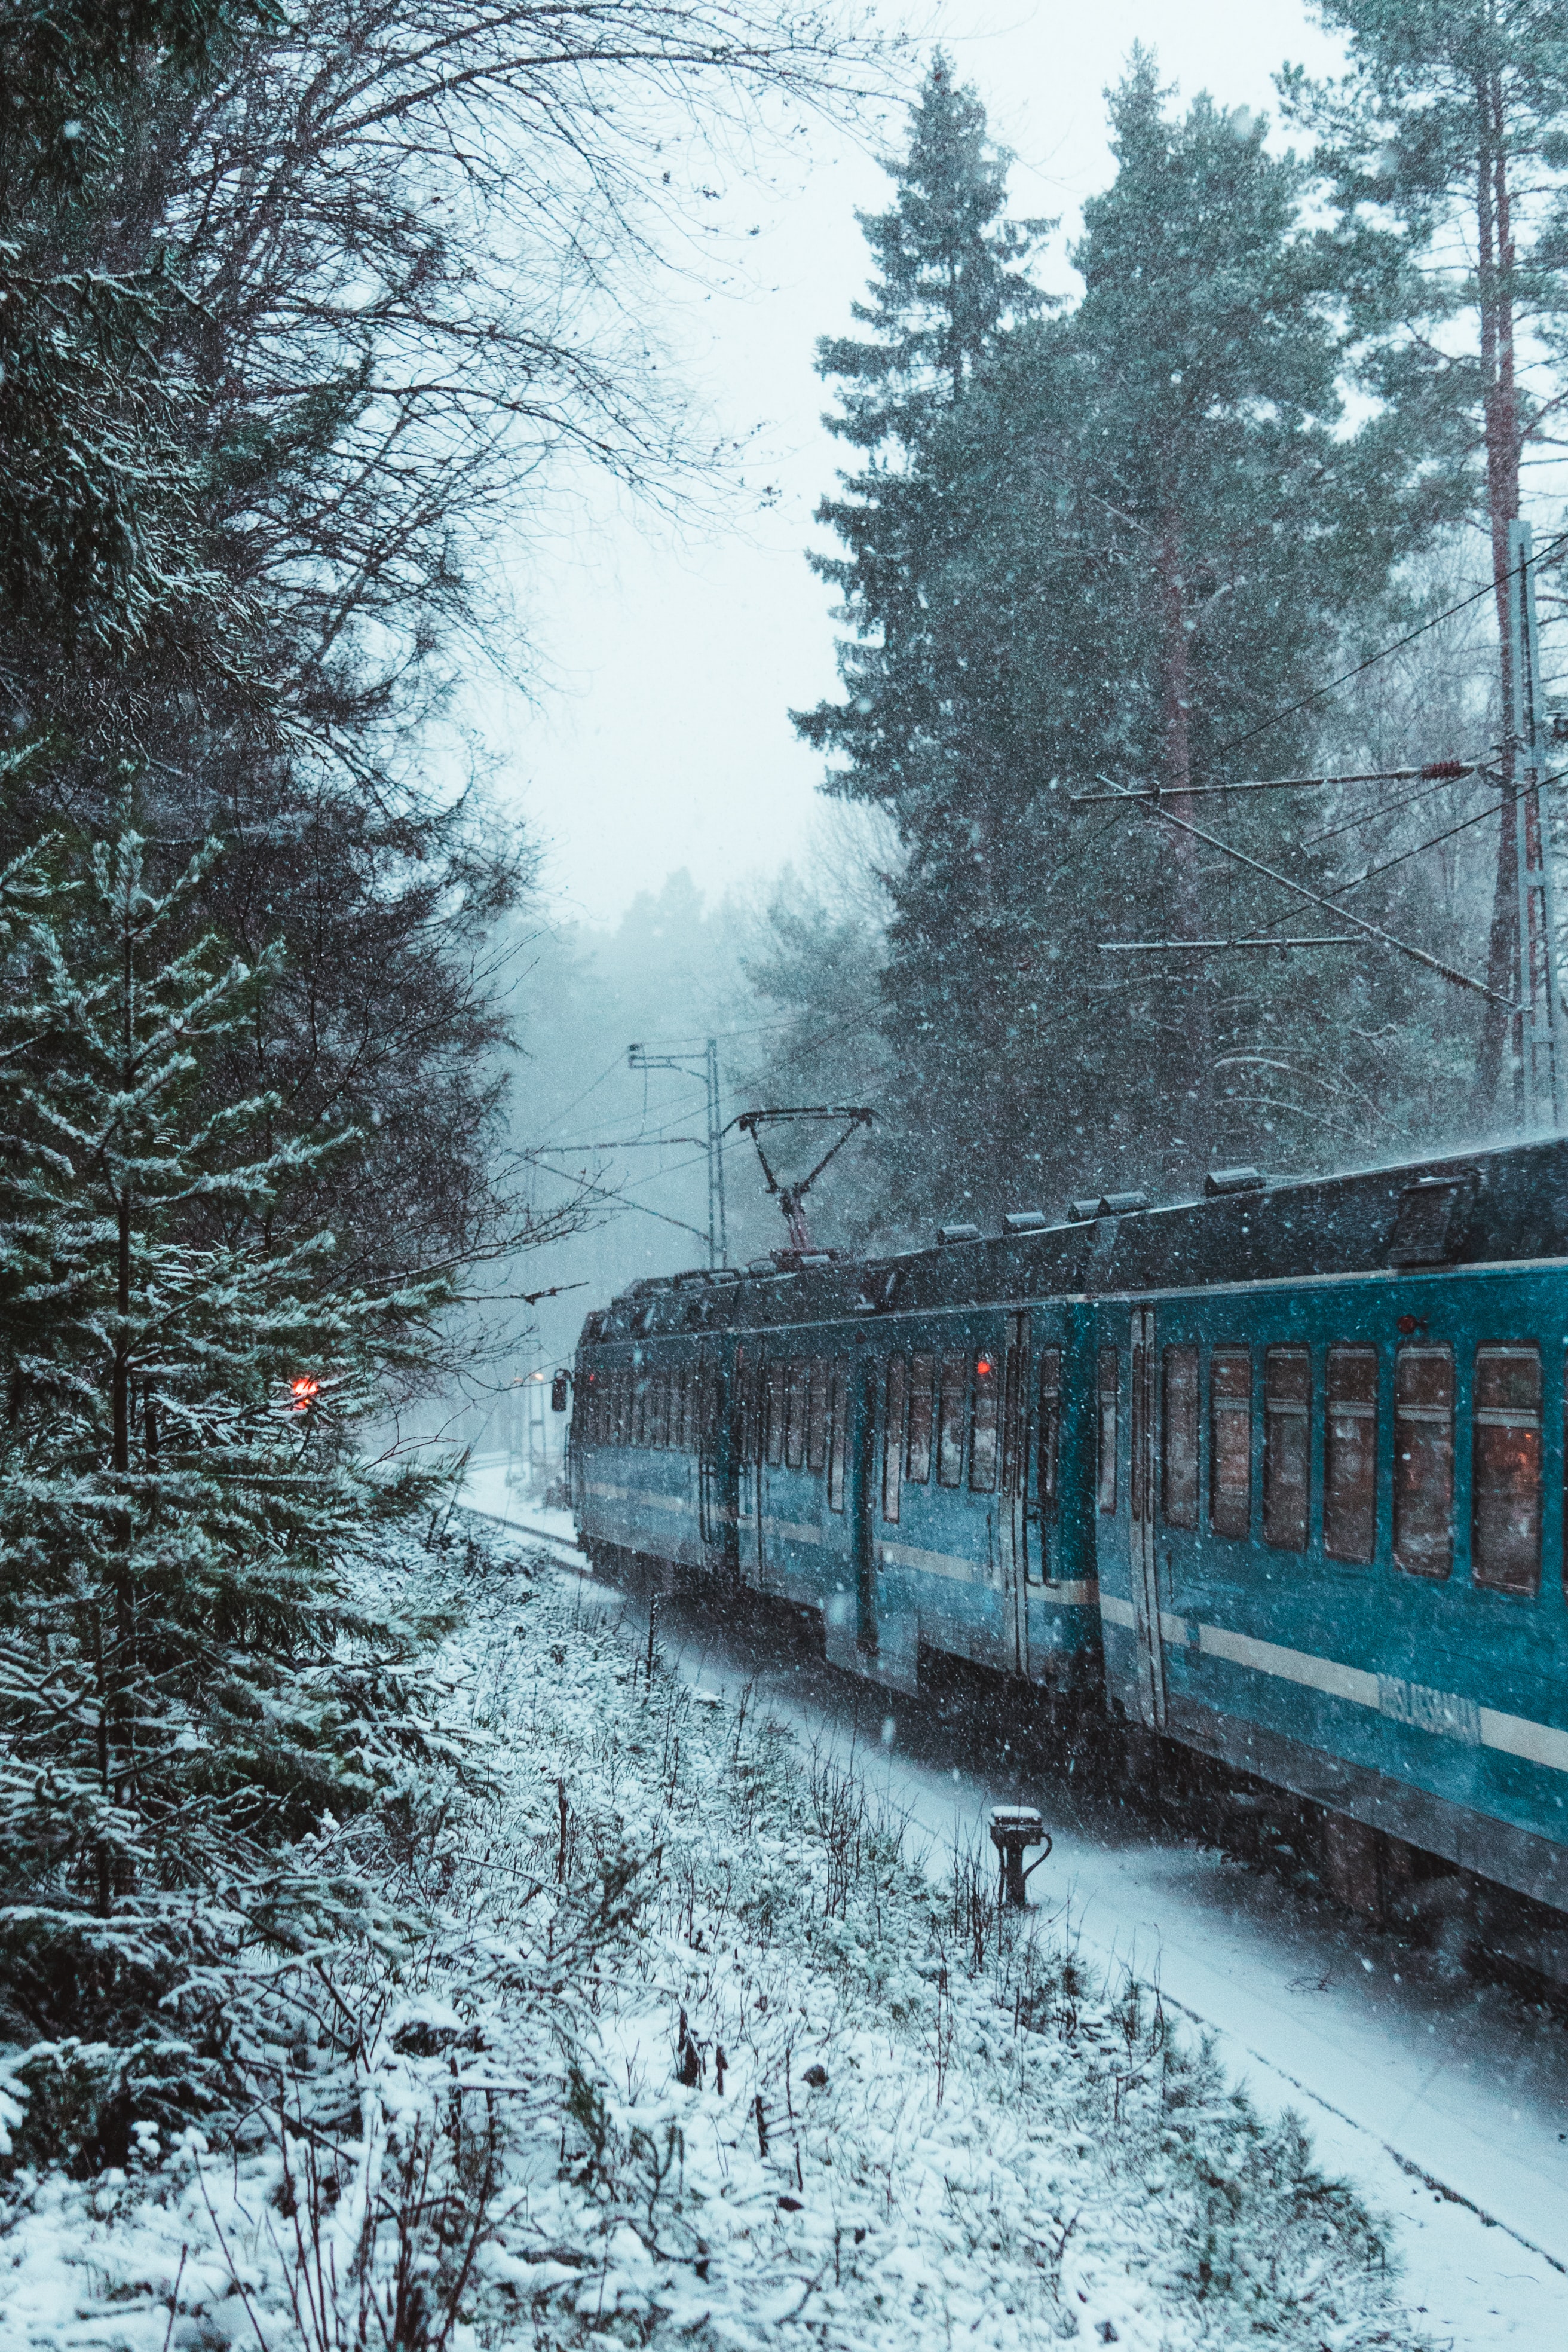 snow, train, winter, miscellanea, miscellaneous, forest